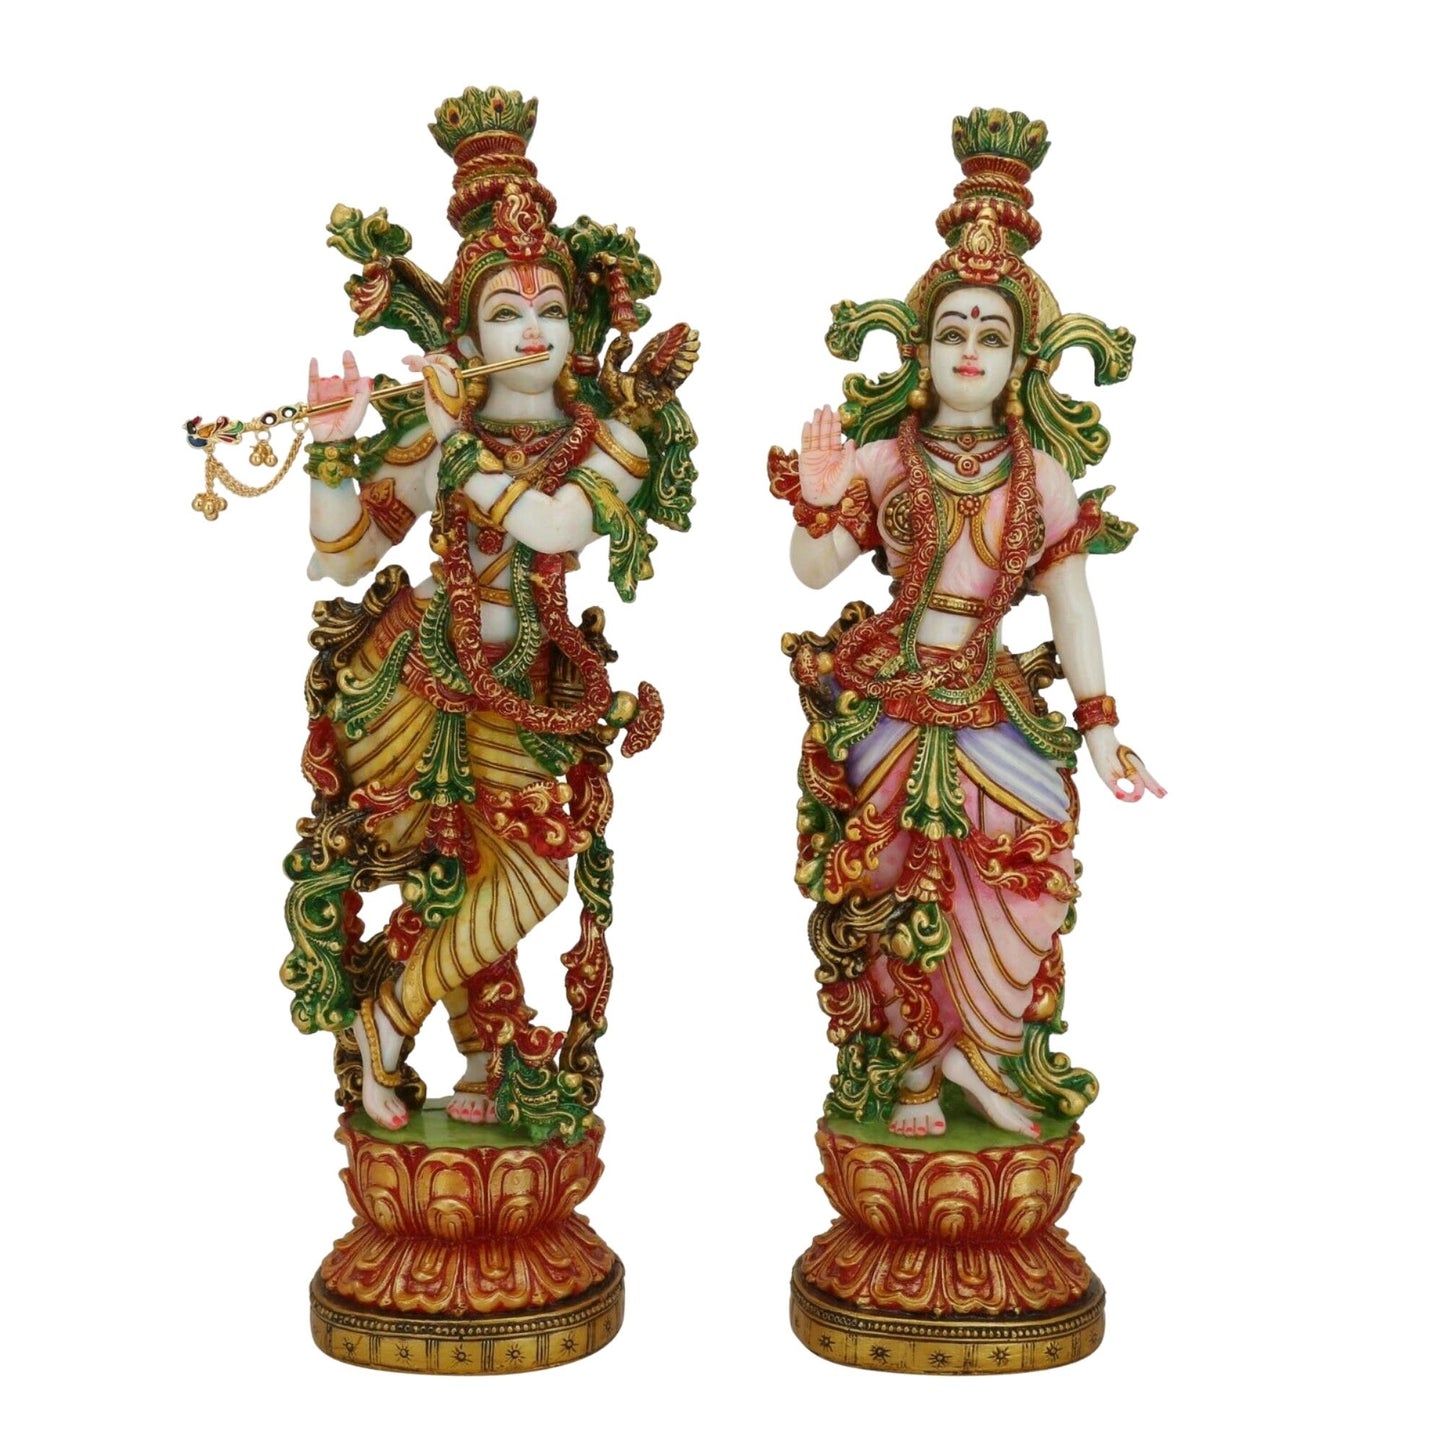 Estatua de Radha Krishna - Gran Radha Krishna Murti de mármol de 15 pulgadas - Ídolo de pareja divina - Figura multicolor Radha Kanha Murti pintada a mano - Escultura especial de regalos de aniversario de inauguración de la casa